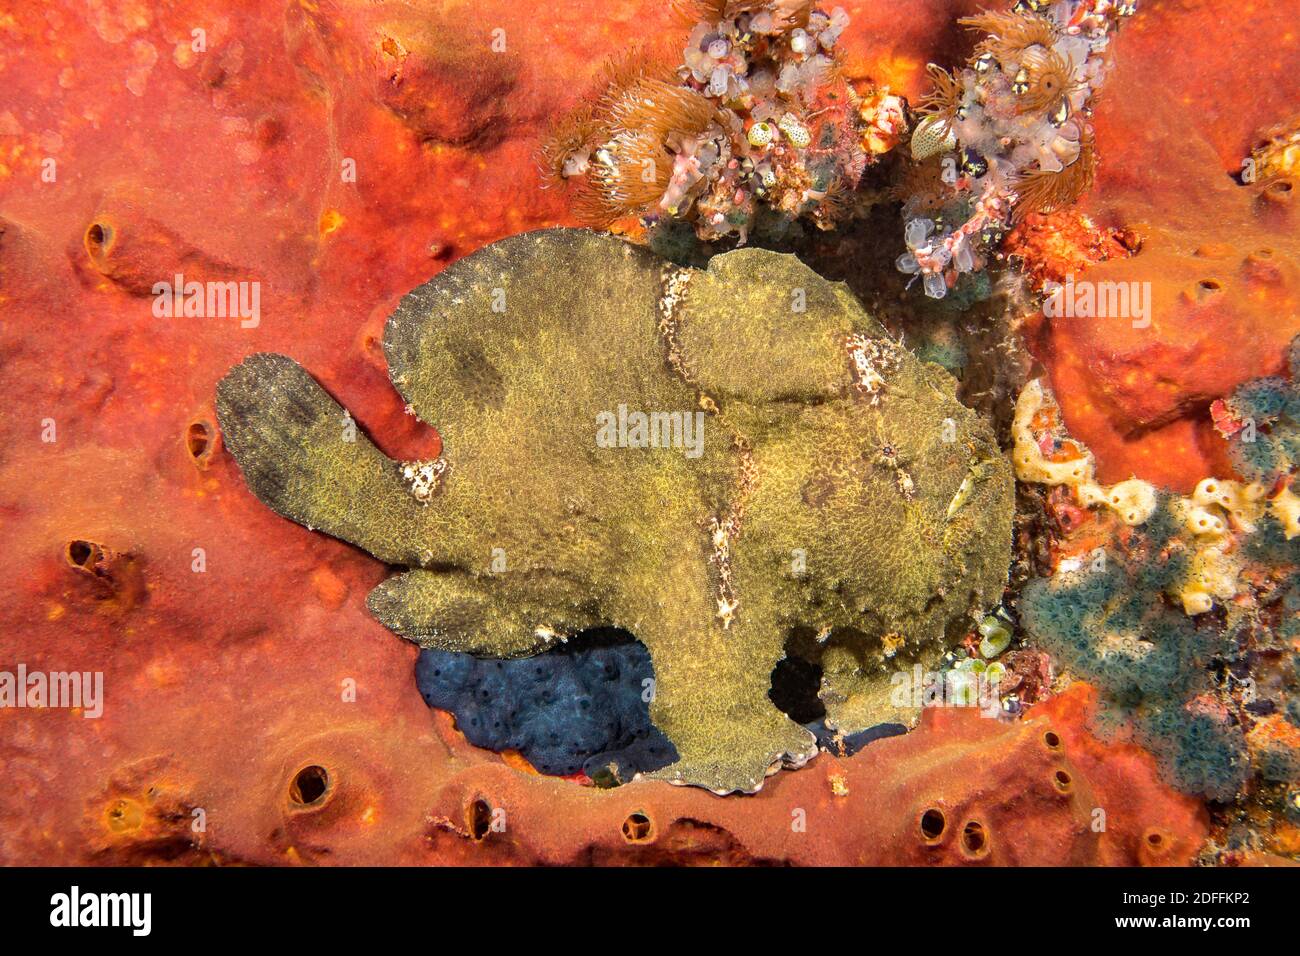 Un pez ceño de Commerson, Antennarius commersoni, encaramado en esponja, Filipinas, Asia. Foto de stock